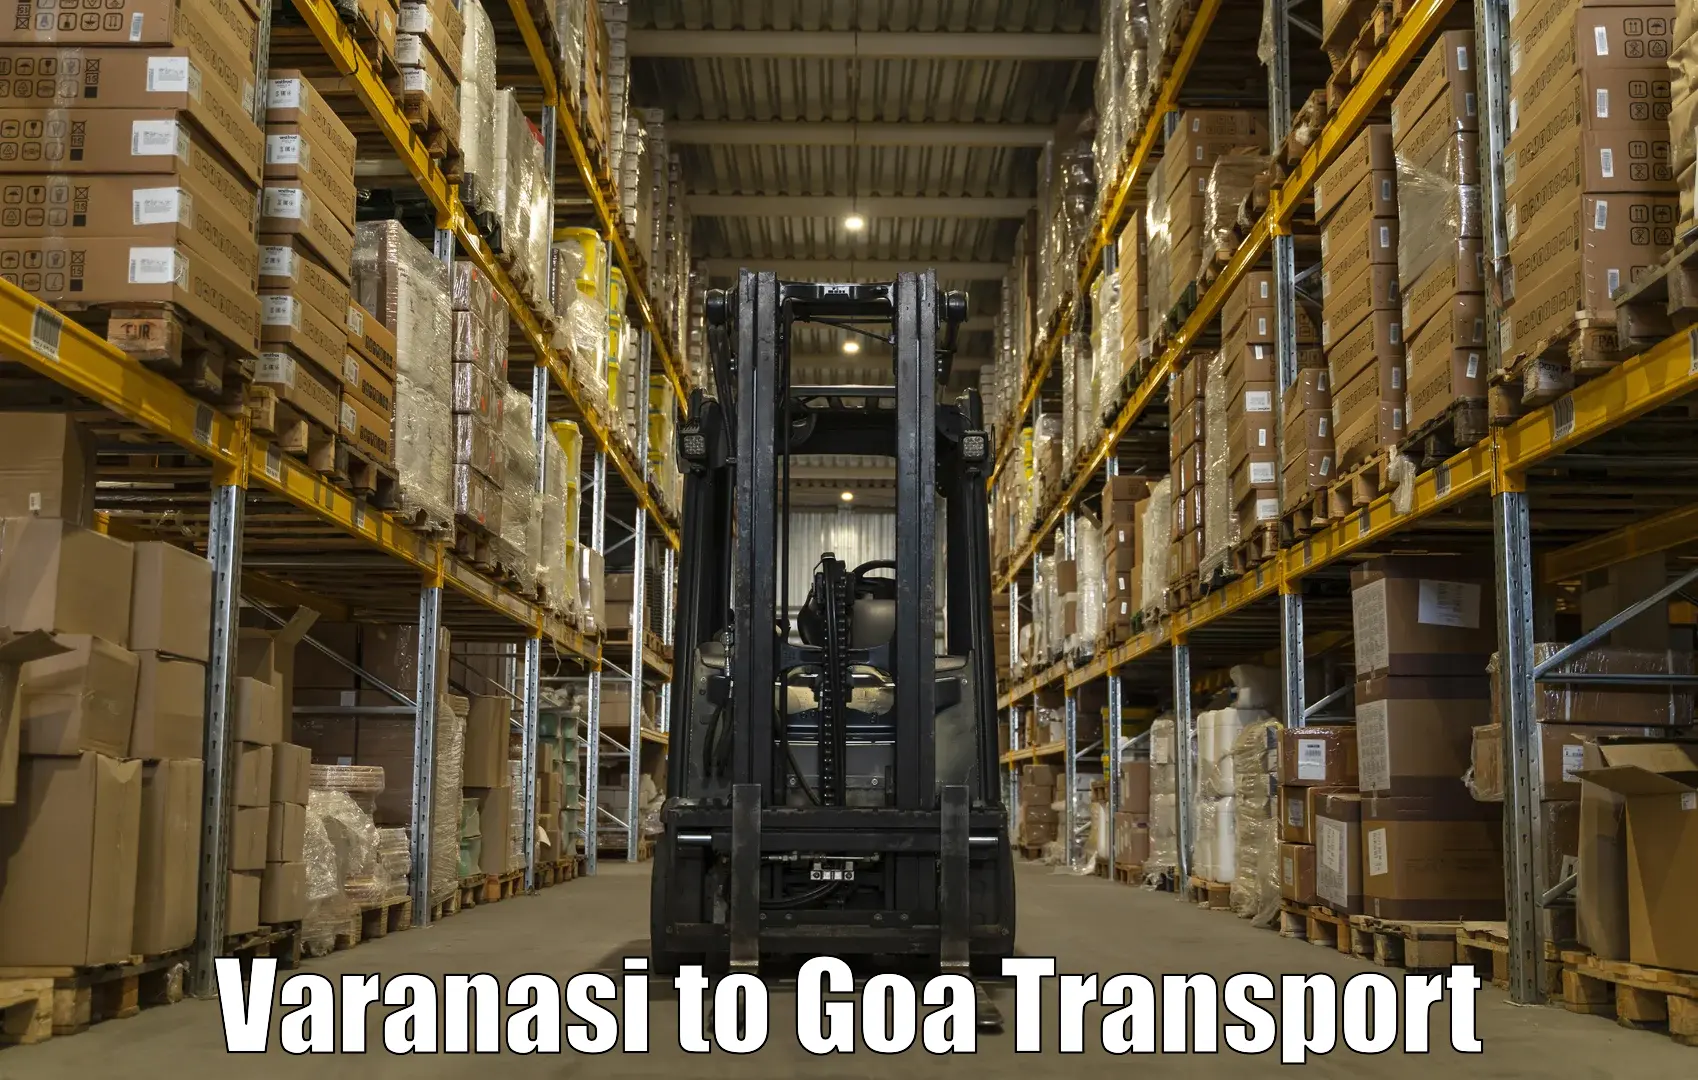 Nearby transport service Varanasi to Goa